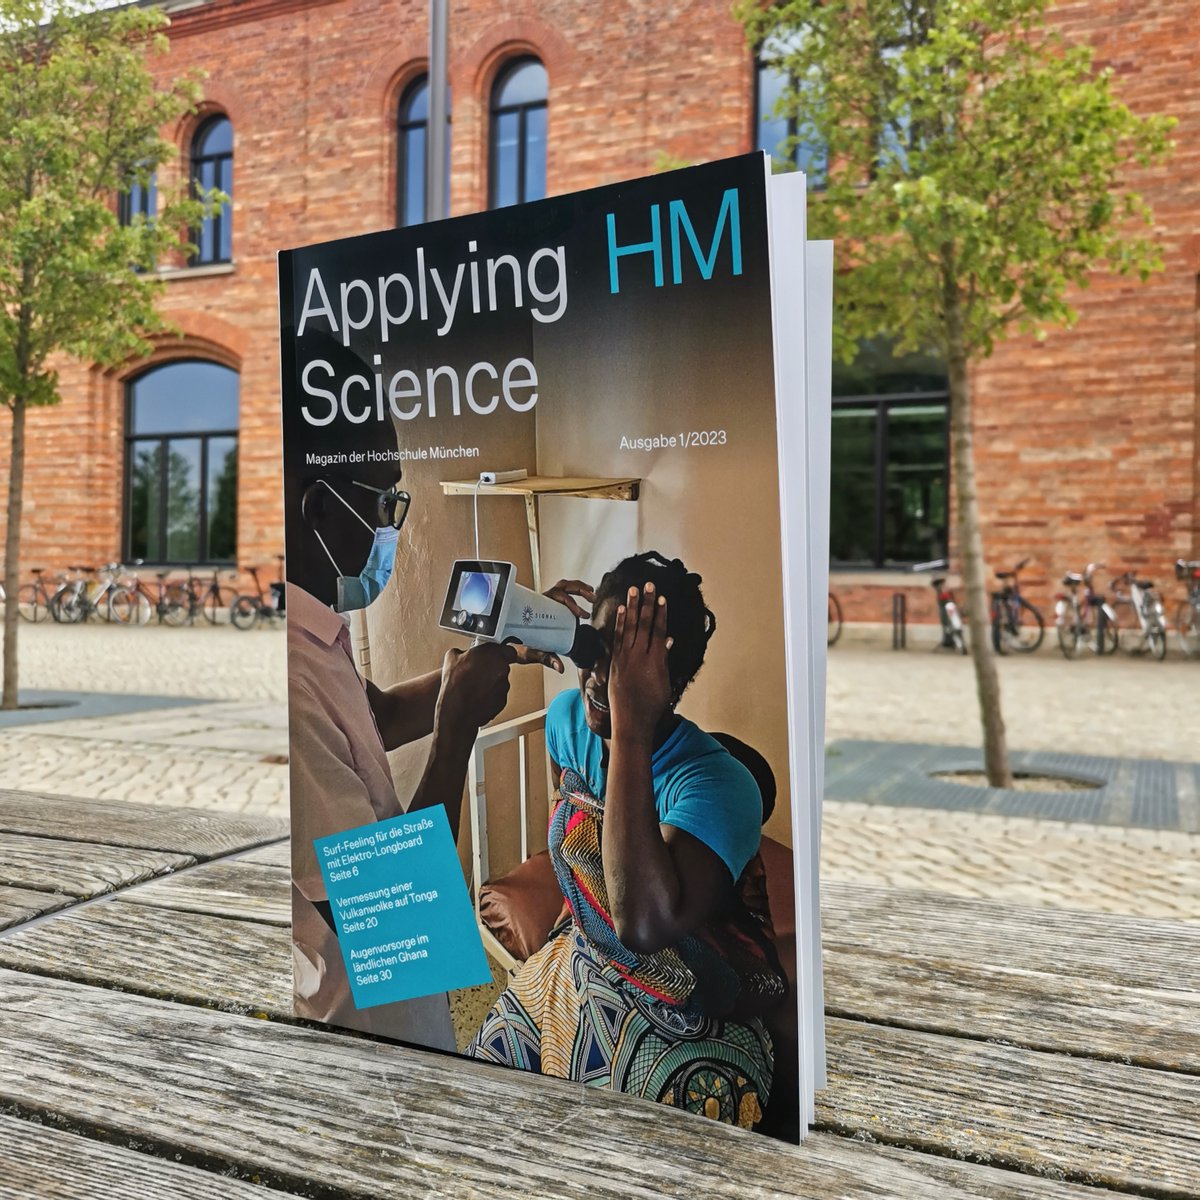 Die neue Ausgabe des HM-Magazins #ApplyingScience ist da! 🎉

Jetzt kostenlos runterladen und reinlesen!

▶️ t1p.de/qfonn

#hochschulemünchen #magazin